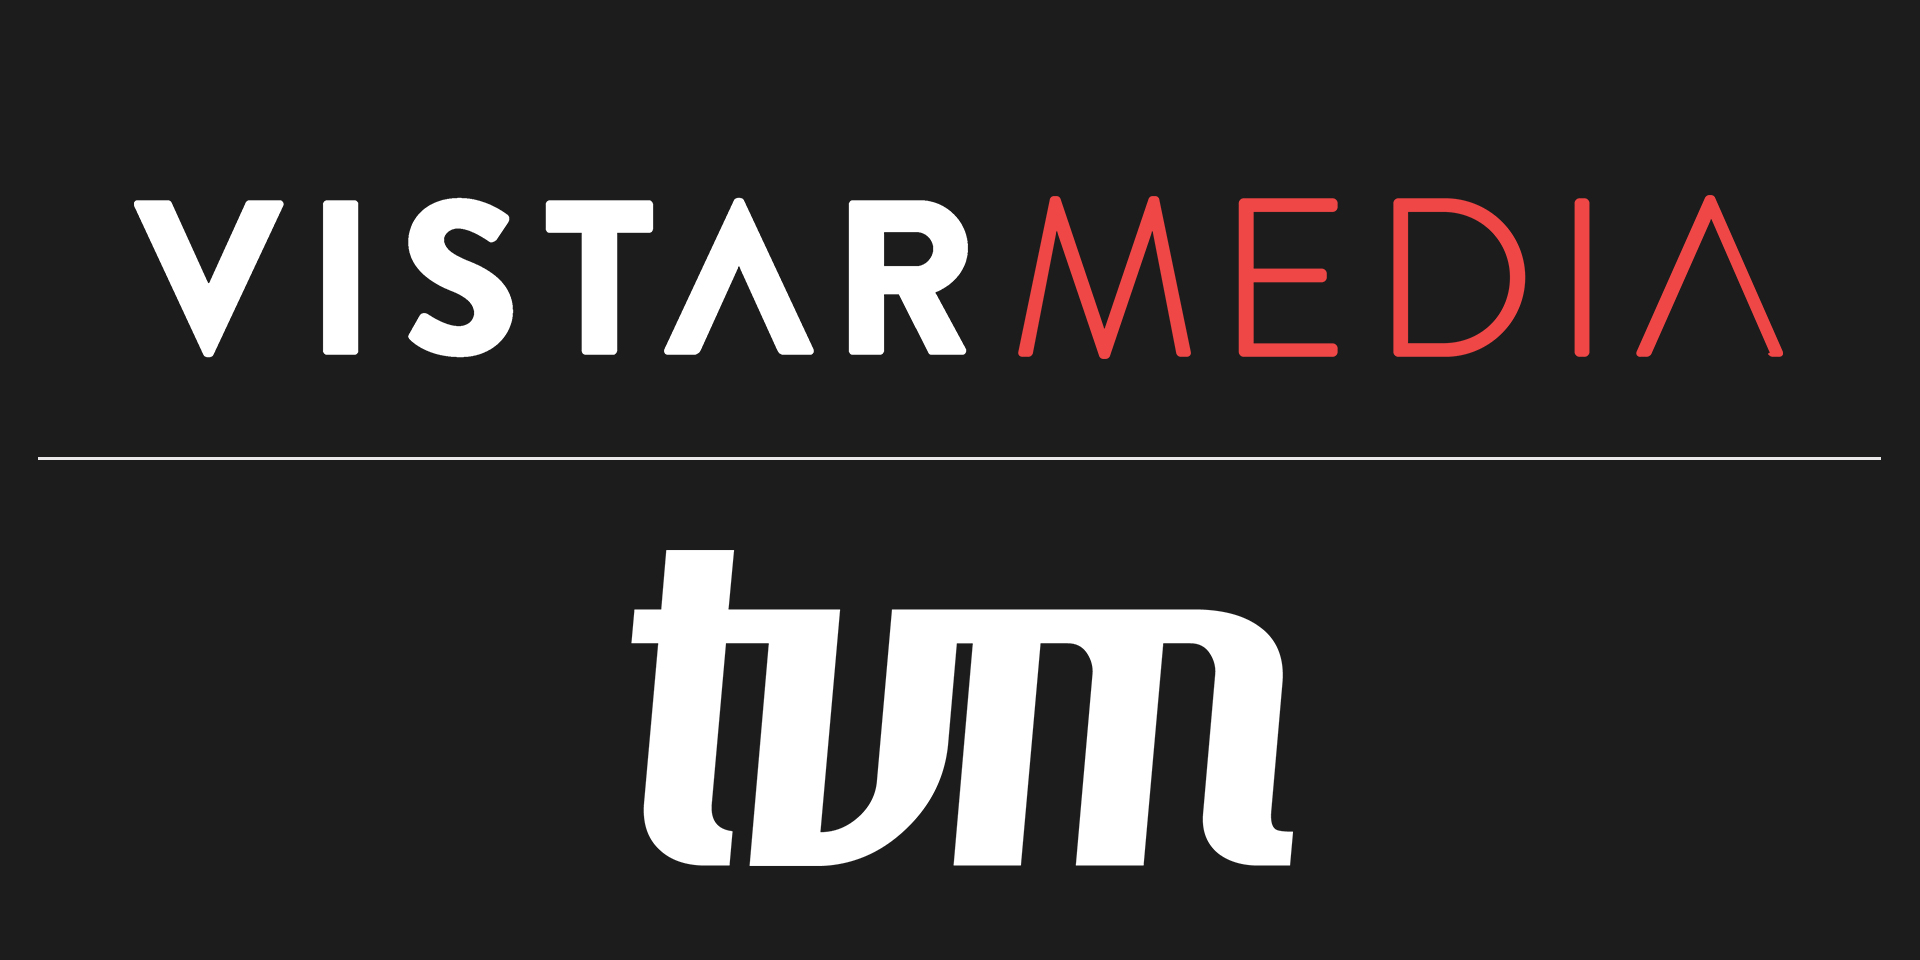 vistar-media-tvm-partnership